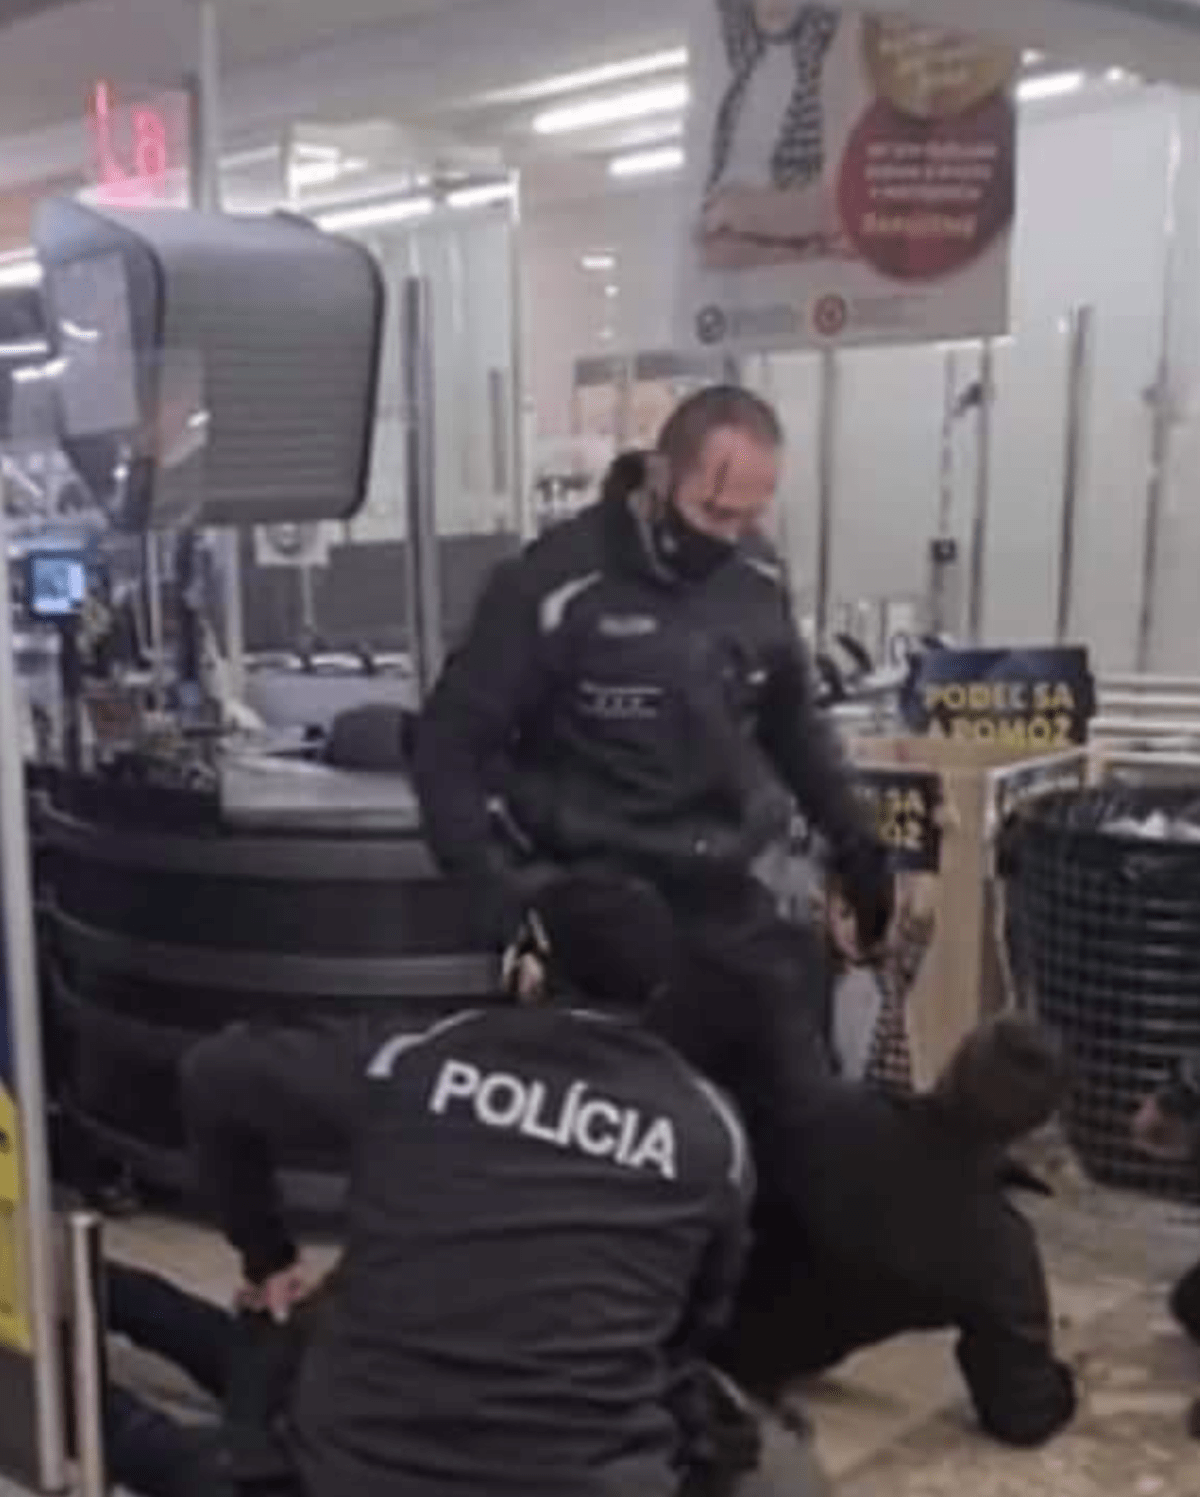 Slovenská policie musela v minulých dnech zasahovat na mnoha místech proti odmítačům vládních nařízení. 